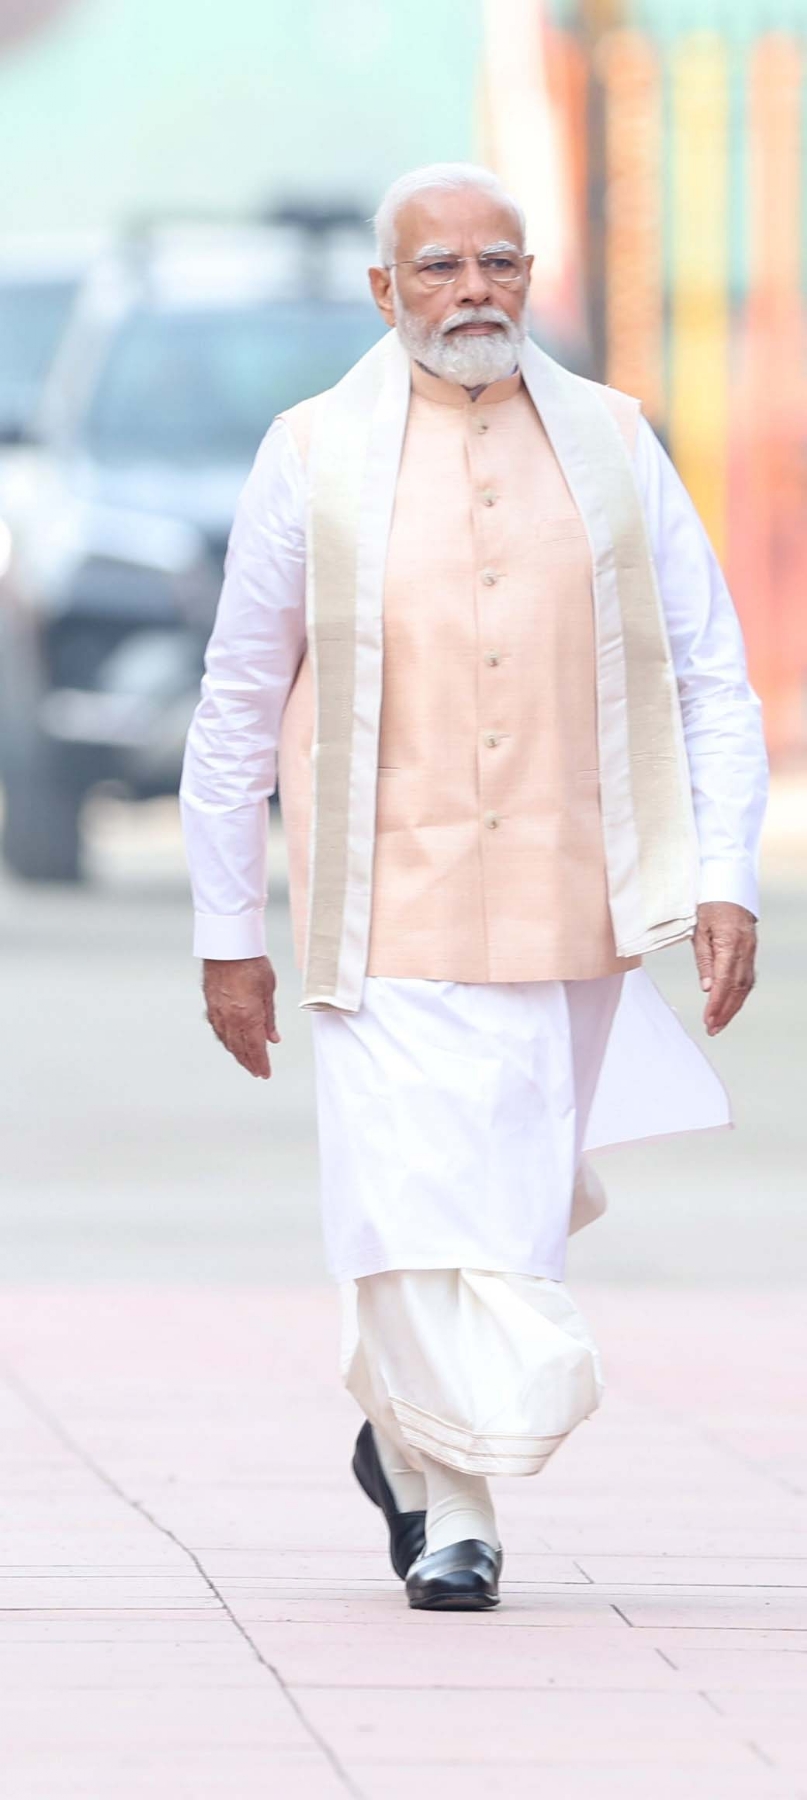 प्रधानमंत्री नरेन्द्र मोदी ने नए संसद भवन के उद्घाटन के अवसर पर तमिलनाडु के अधीनम संतों ने प्रधानमंत्री को सौंपा सेंगोल कर पूरे विधि-विधान के साथ अनुष्ठान किया। हिन्दुस्थान समाचार/ गणेश बिष्ट